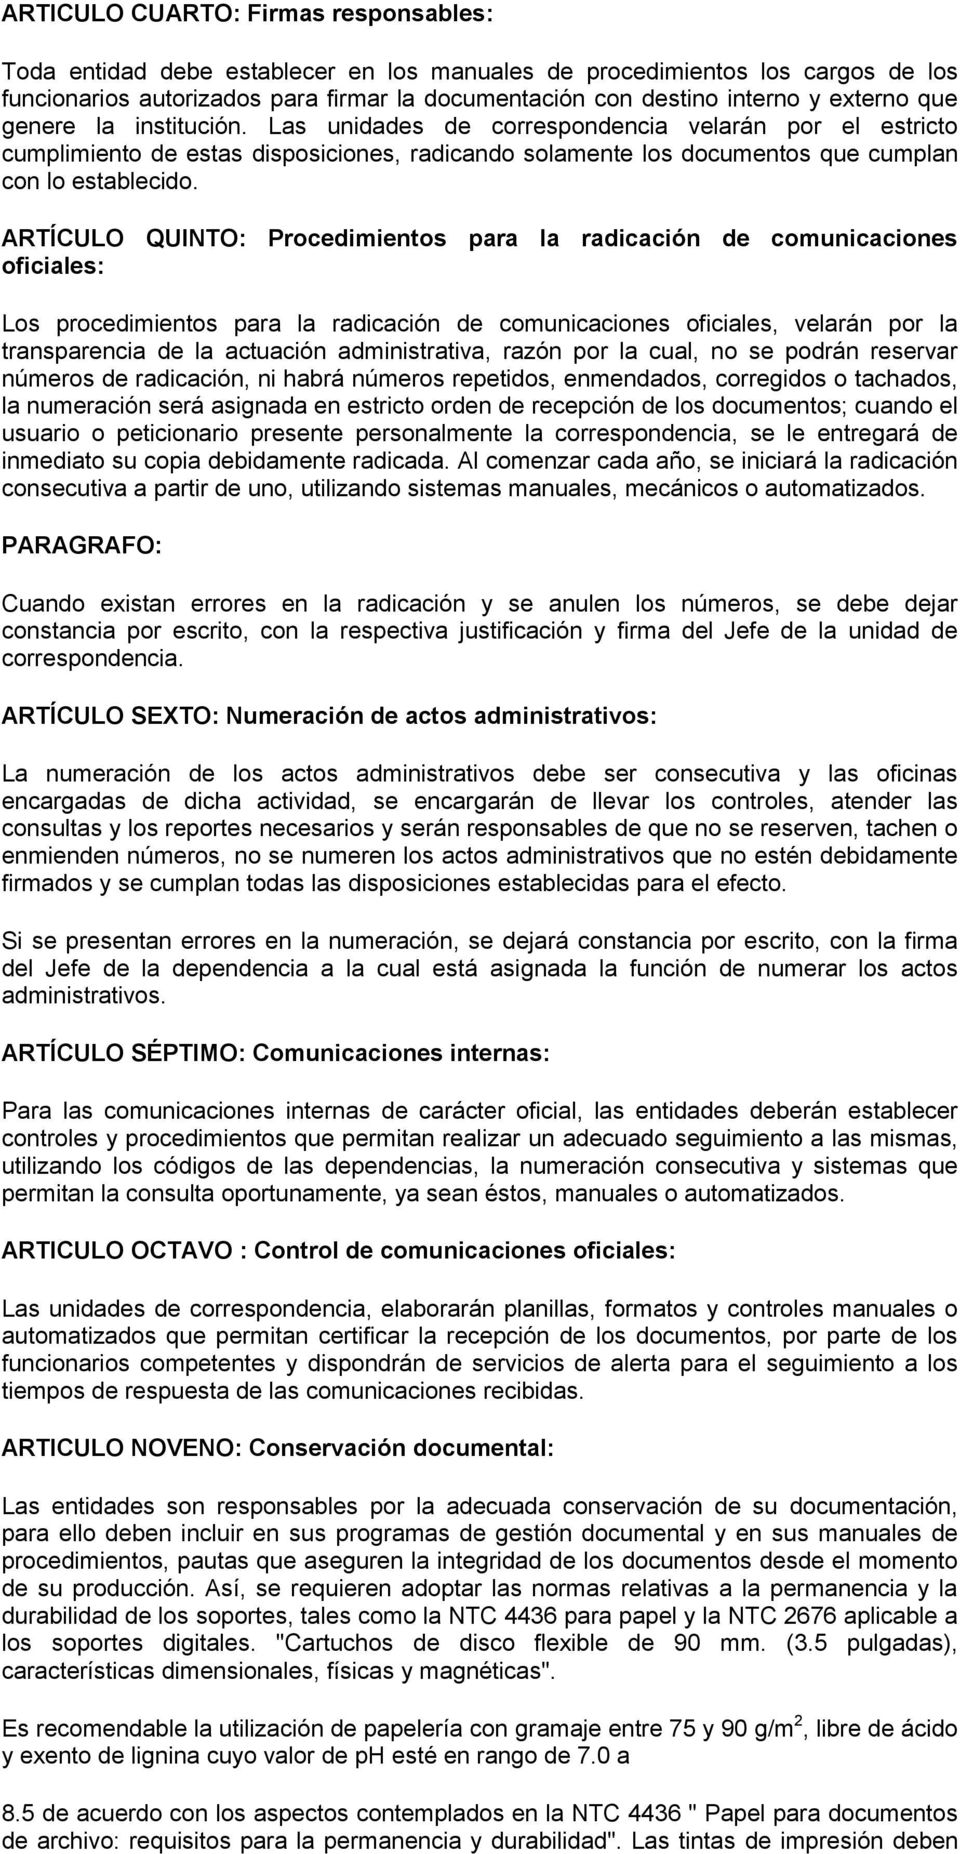 ARTÍCULO QUINTO: Procedimientos para la radicación de comunicaciones oficiales: Los procedimientos para la radicación de comunicaciones oficiales, velarán por la transparencia de la actuación